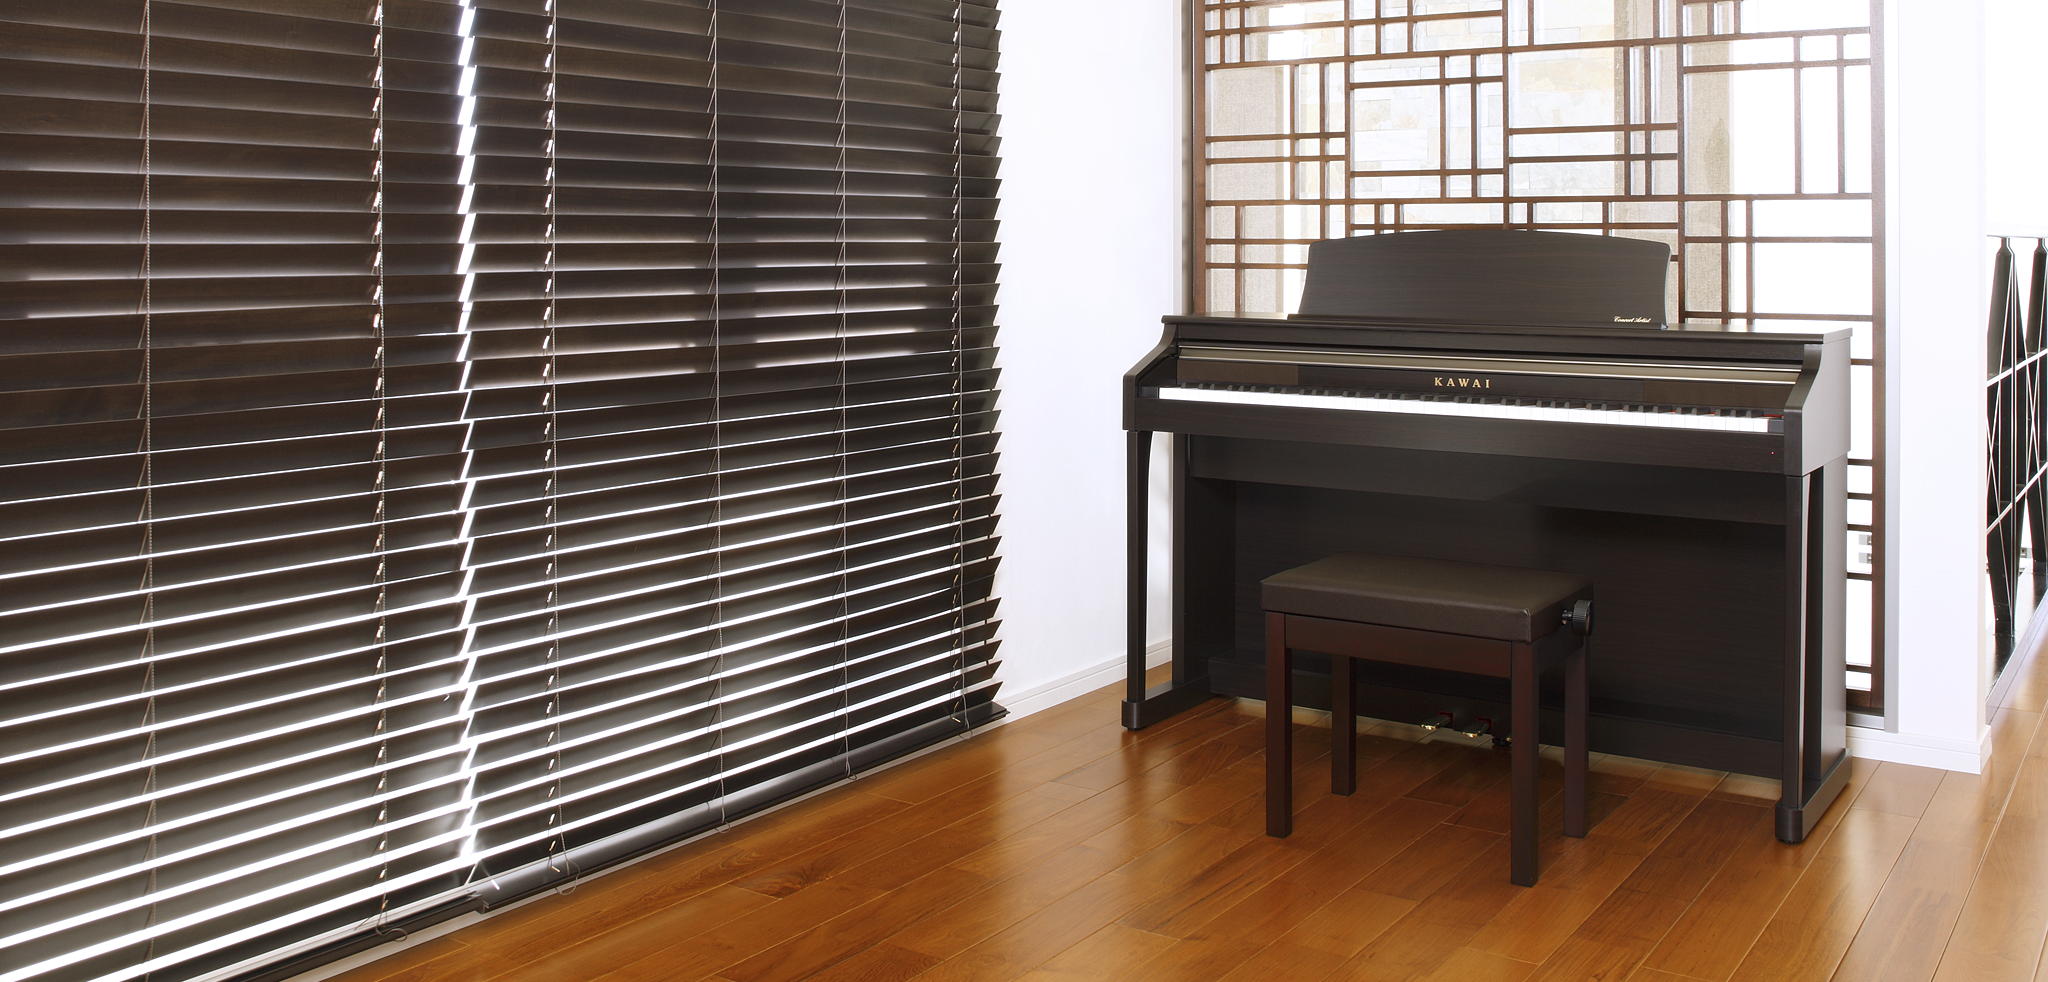 Kawai CA17｜Digital Pianos｜Products｜Kawai Musical Instruments 